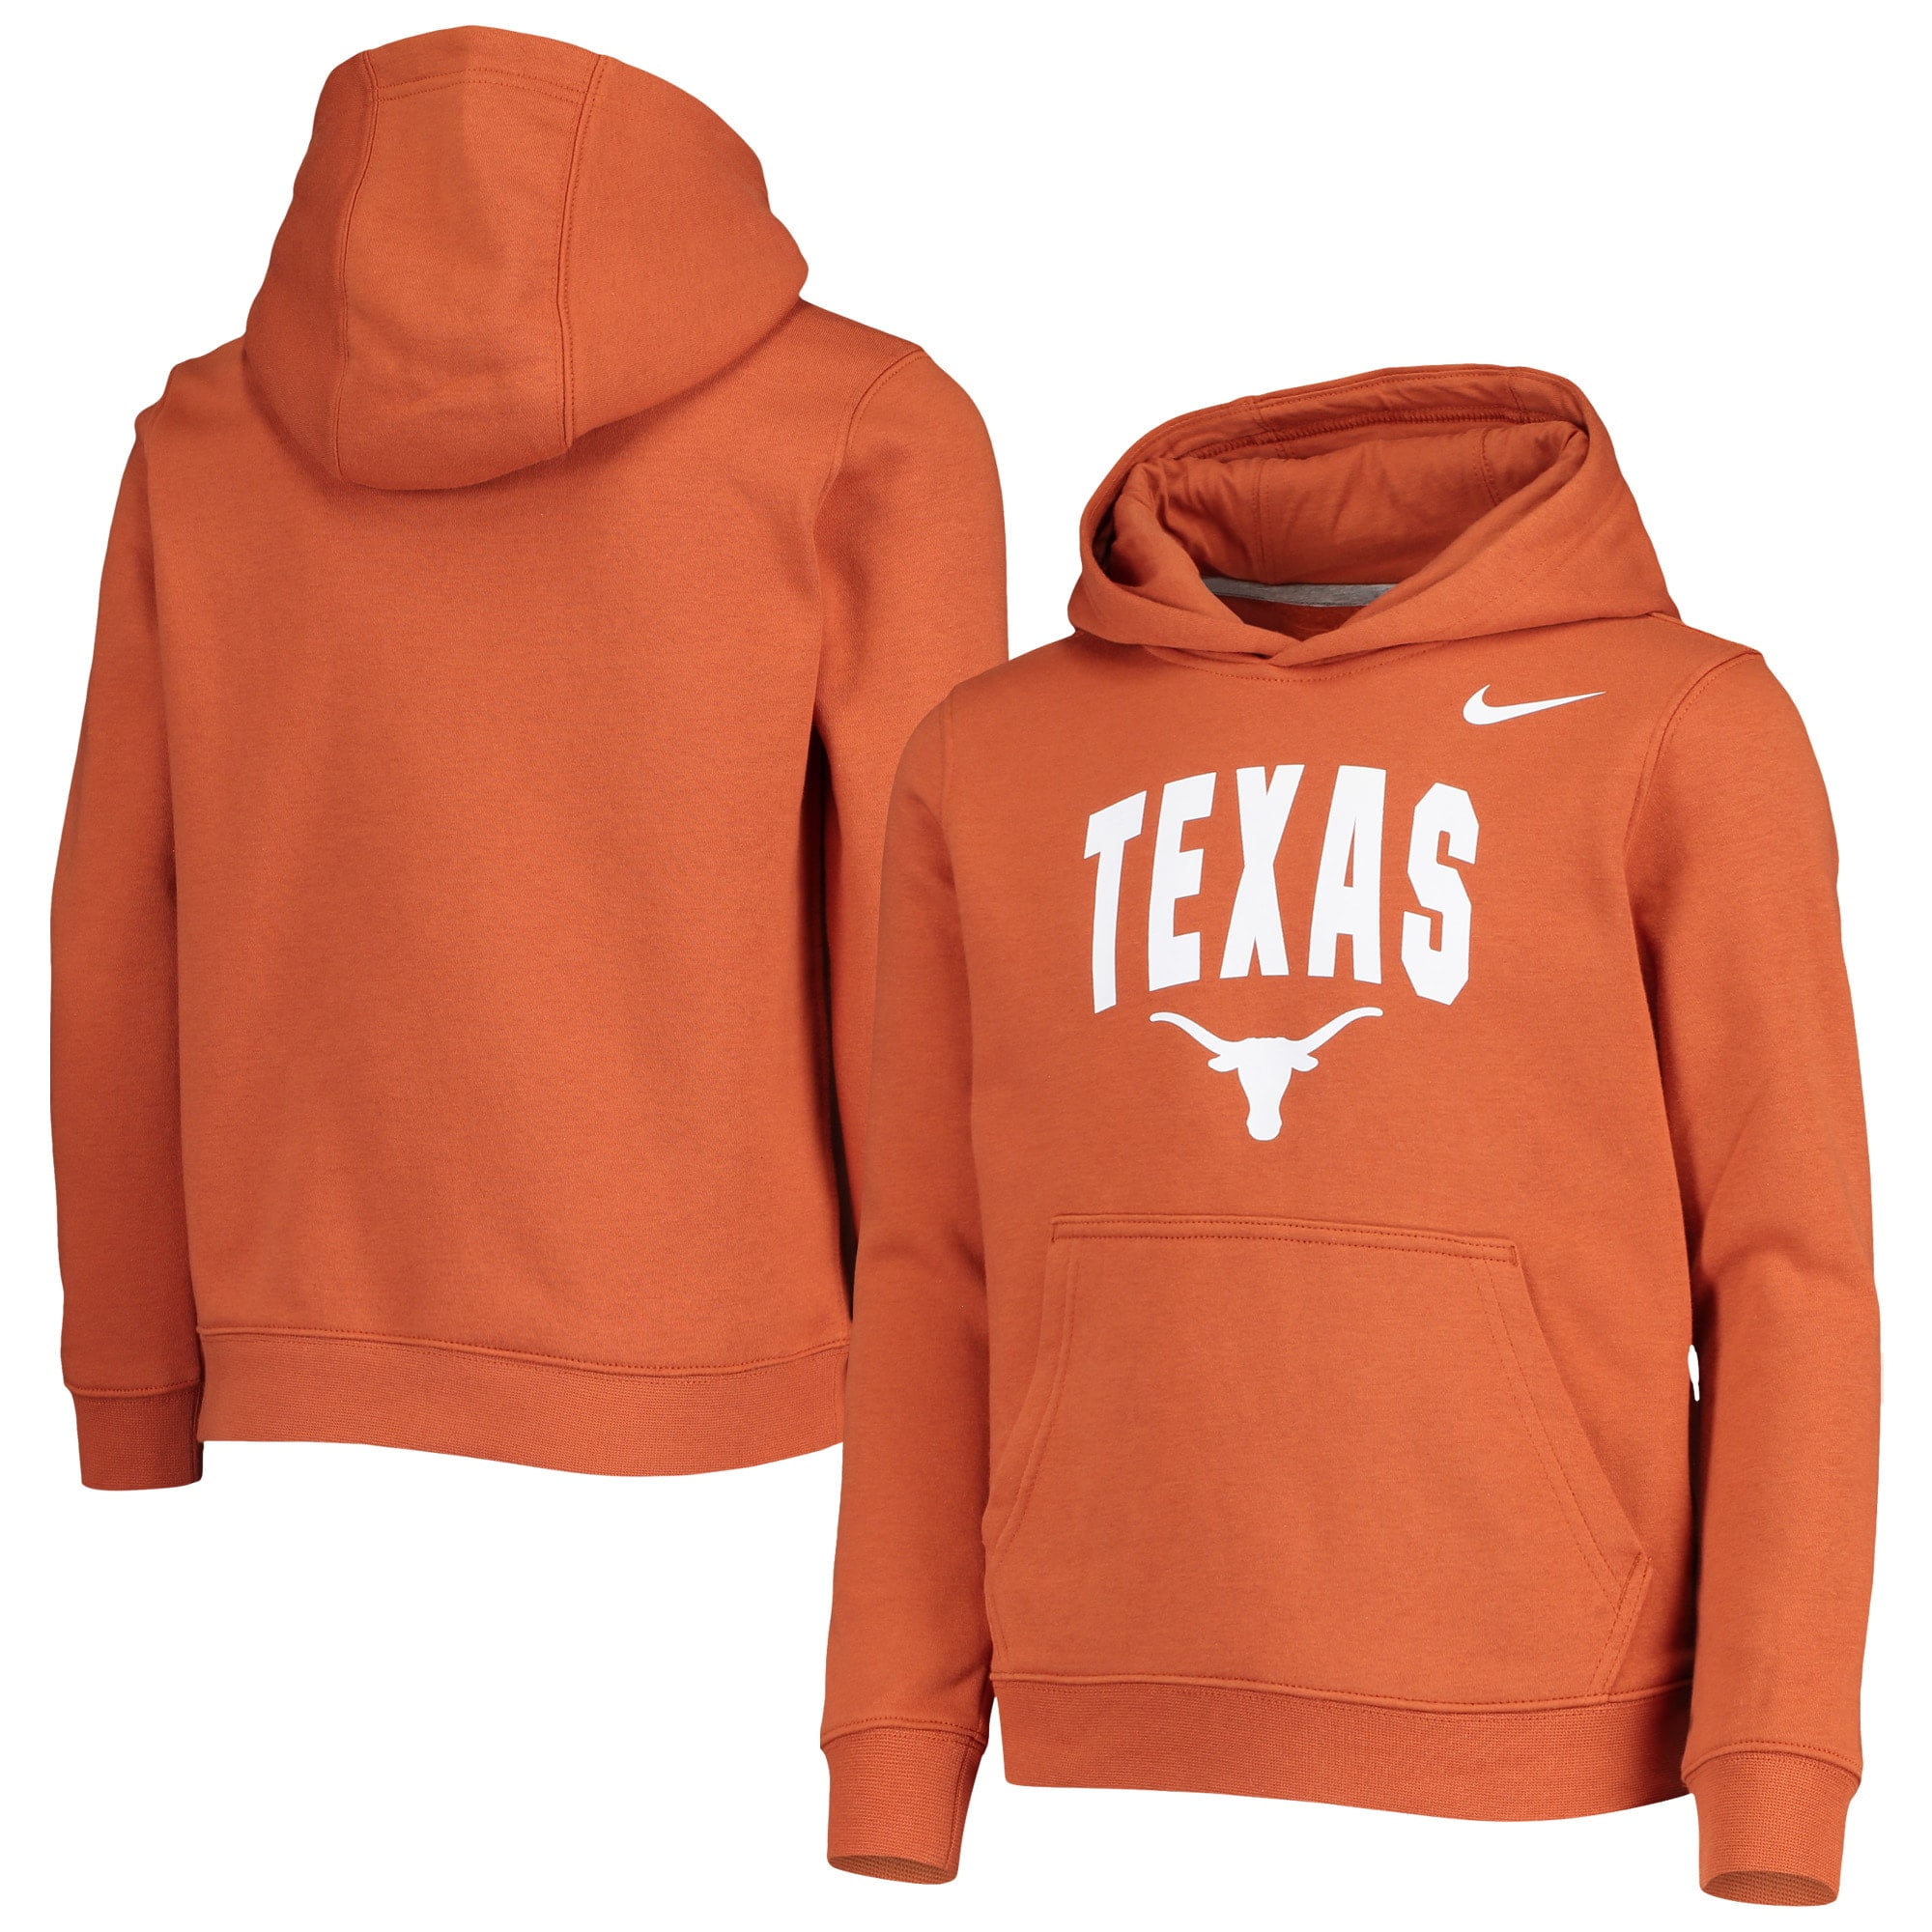 Proud Of Texas Men Long Sleeve Pullover Athletic Hoodies Hooded Sweatshirt Graphic Hoodie 